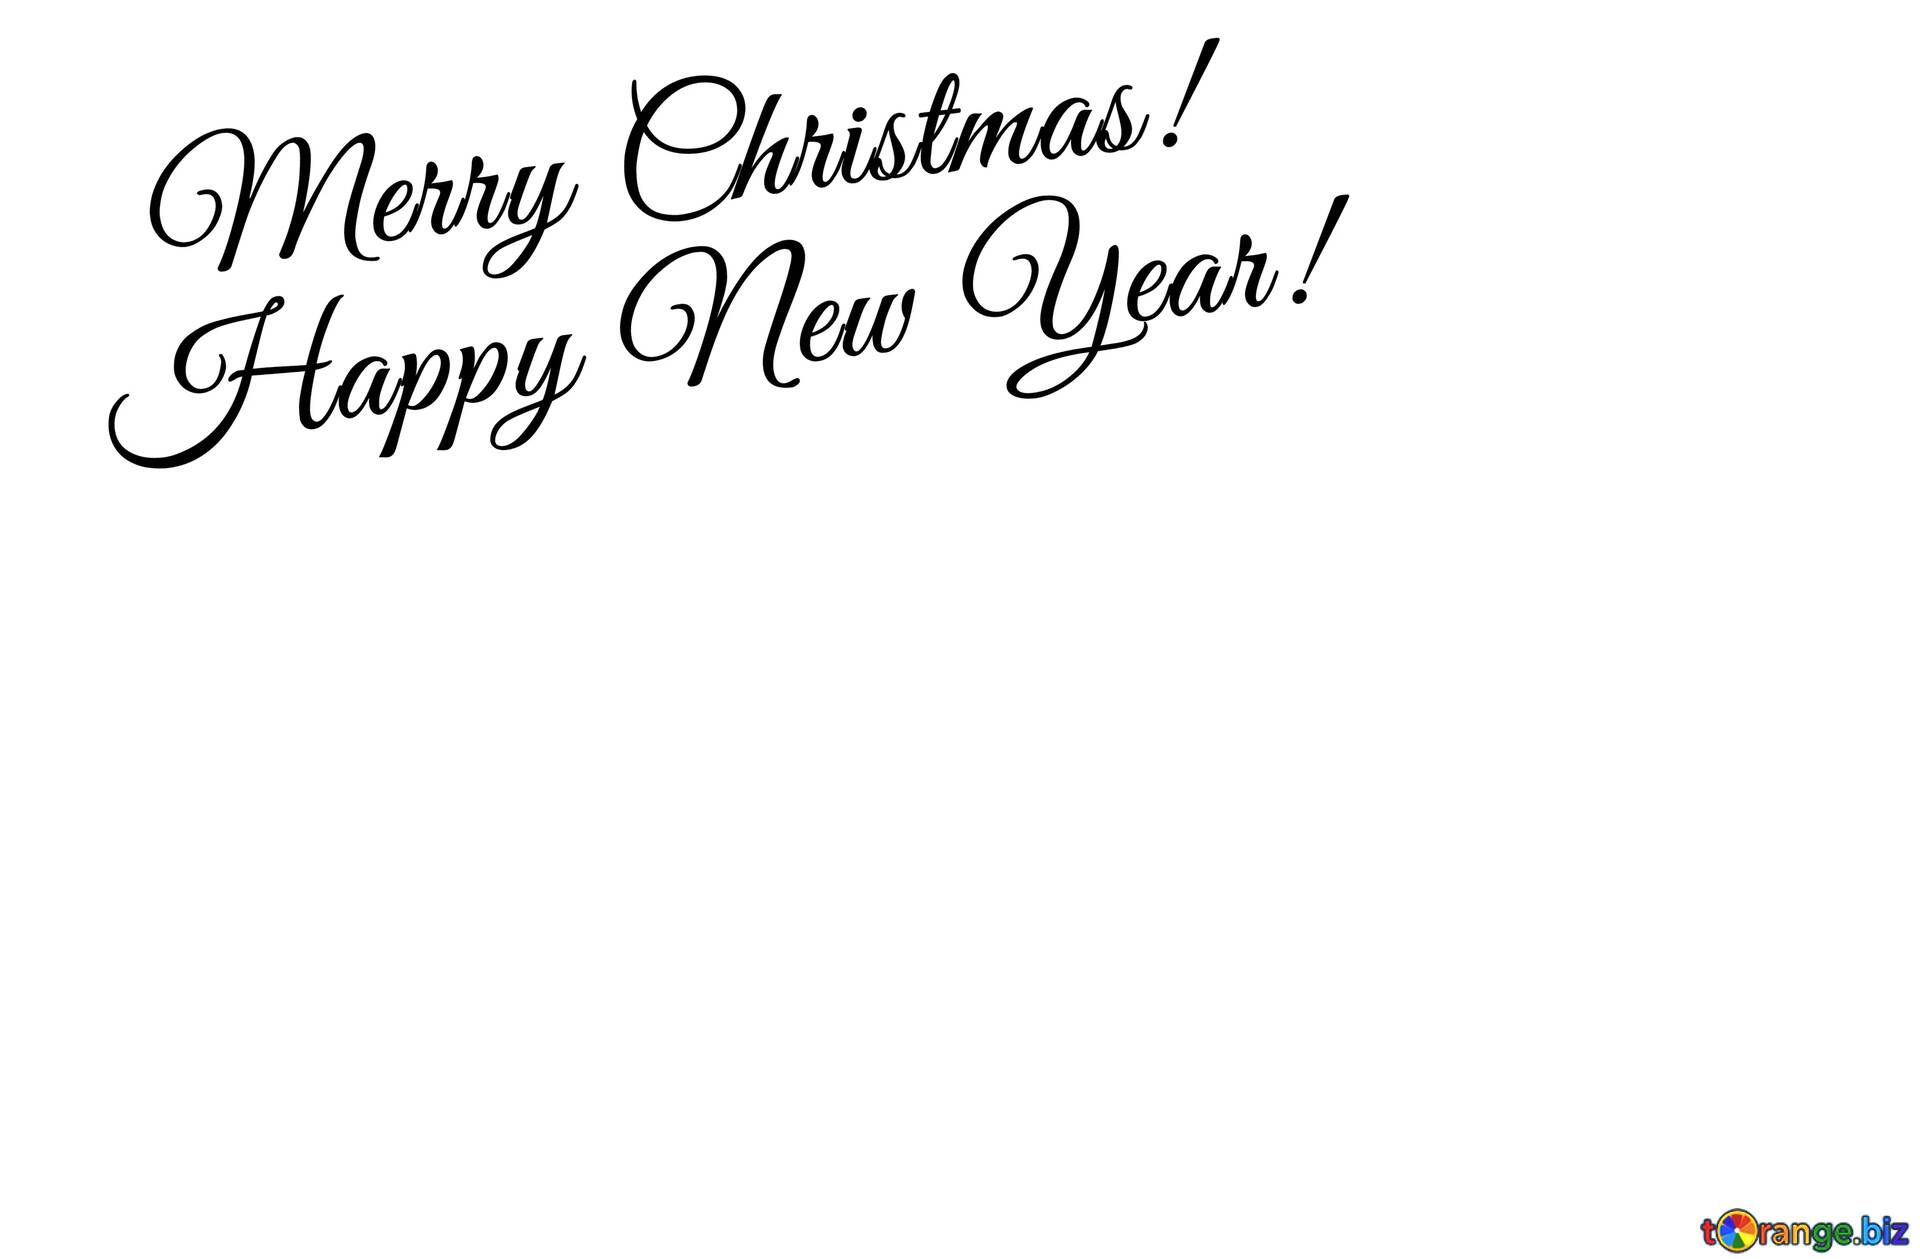 フリー画像をダウンロード Clipart Merry Christmas And Happy New Year 帰属とライセンス 無料フォトバンクtorange Biz 効果